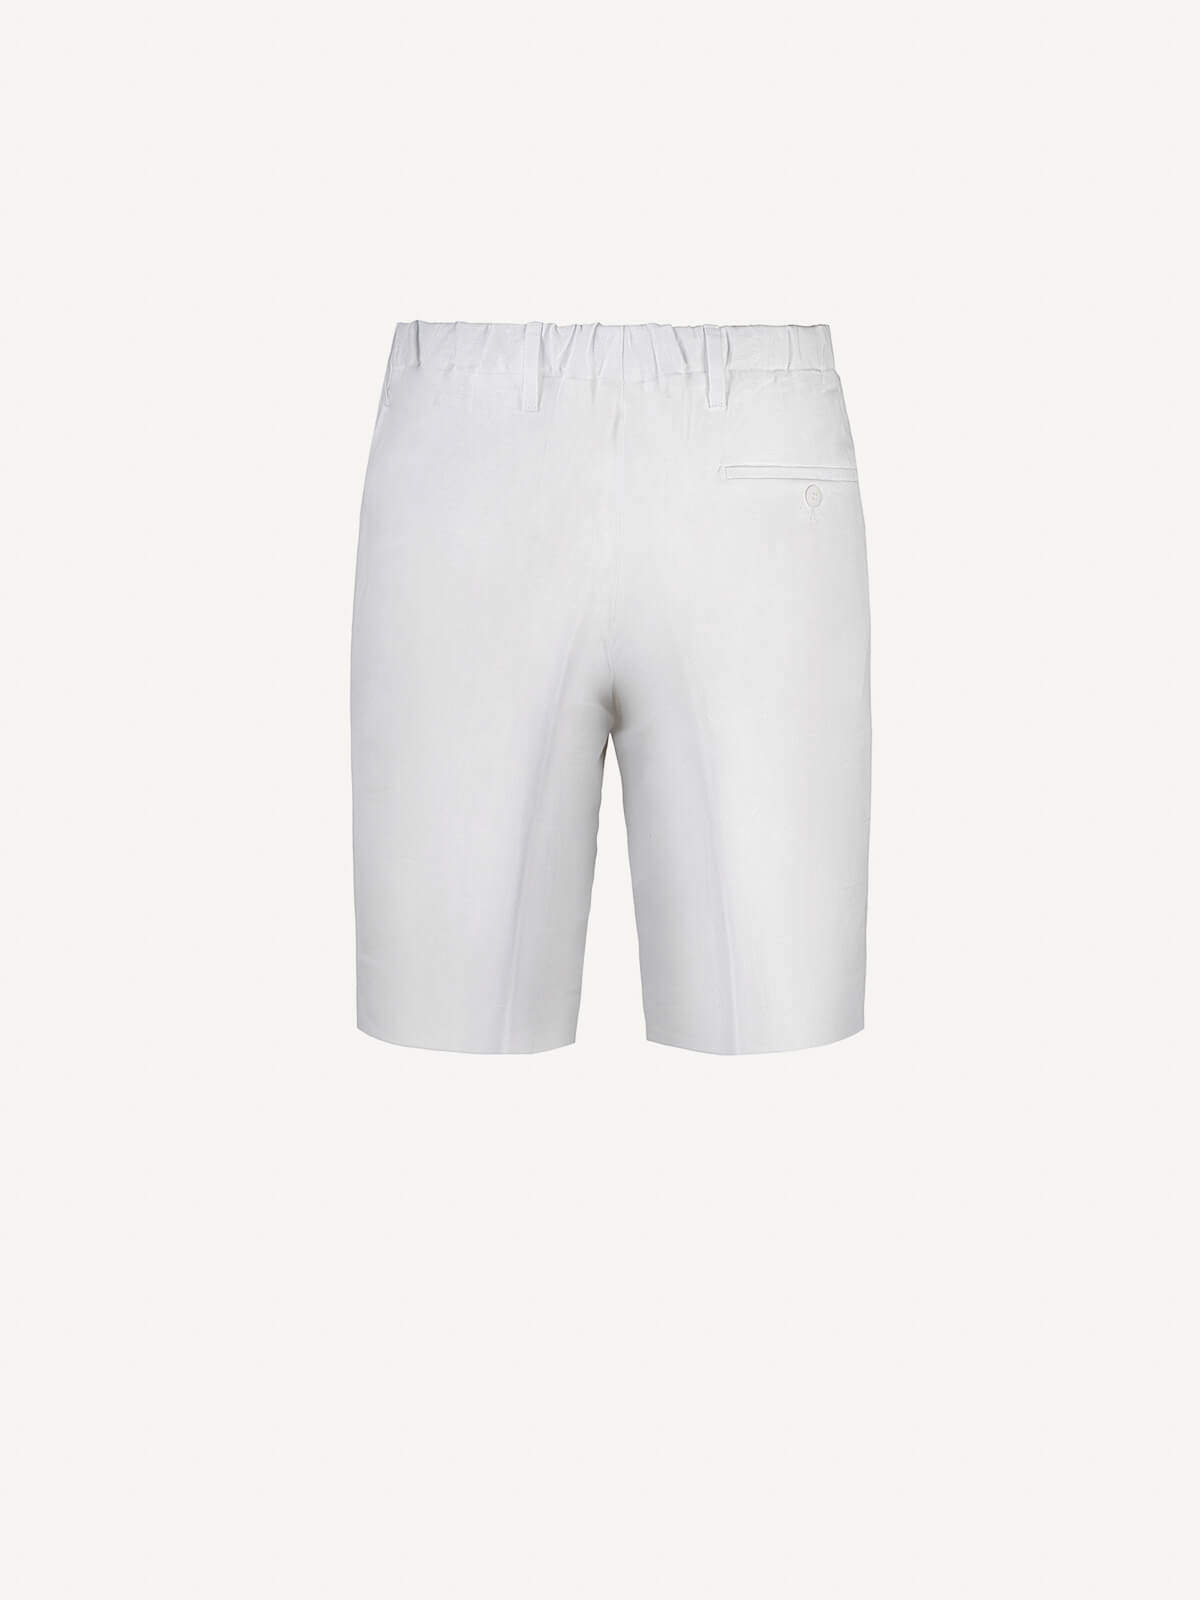 Bermuda Capri Linen man trousers 100% Capri white color